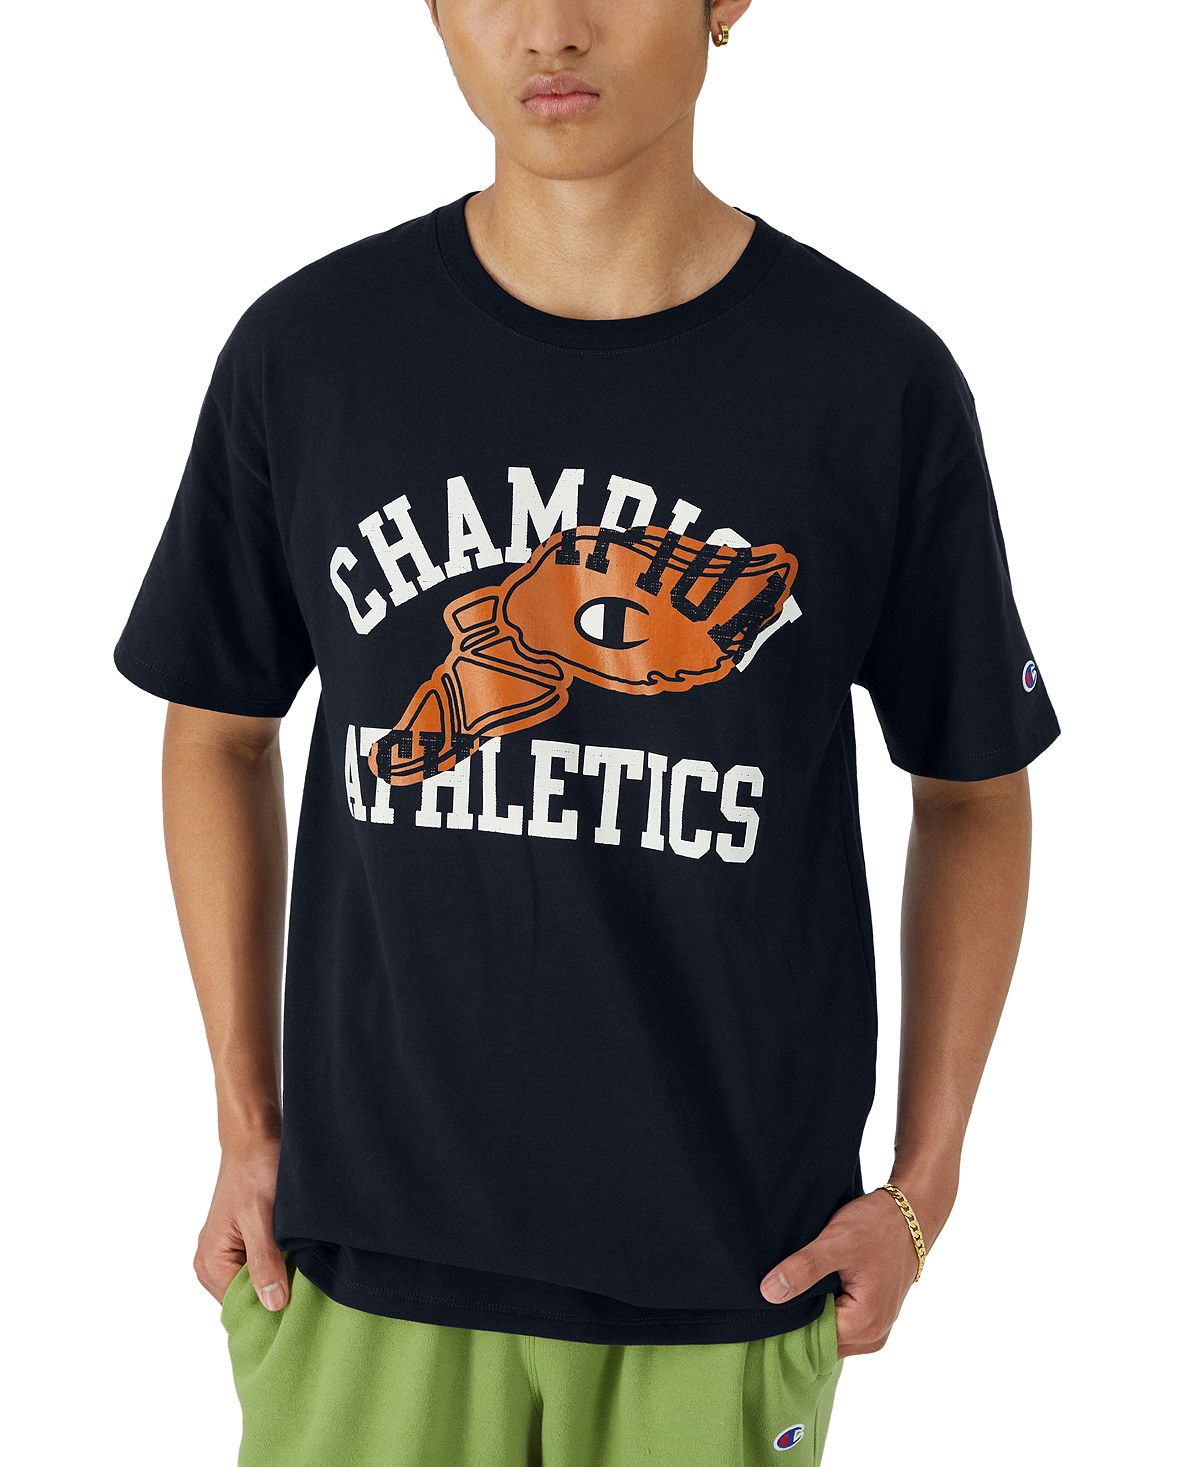 мужская классическая футболка с графическим логотипом marvel Мужская классическая футболка с графическим логотипом Champion